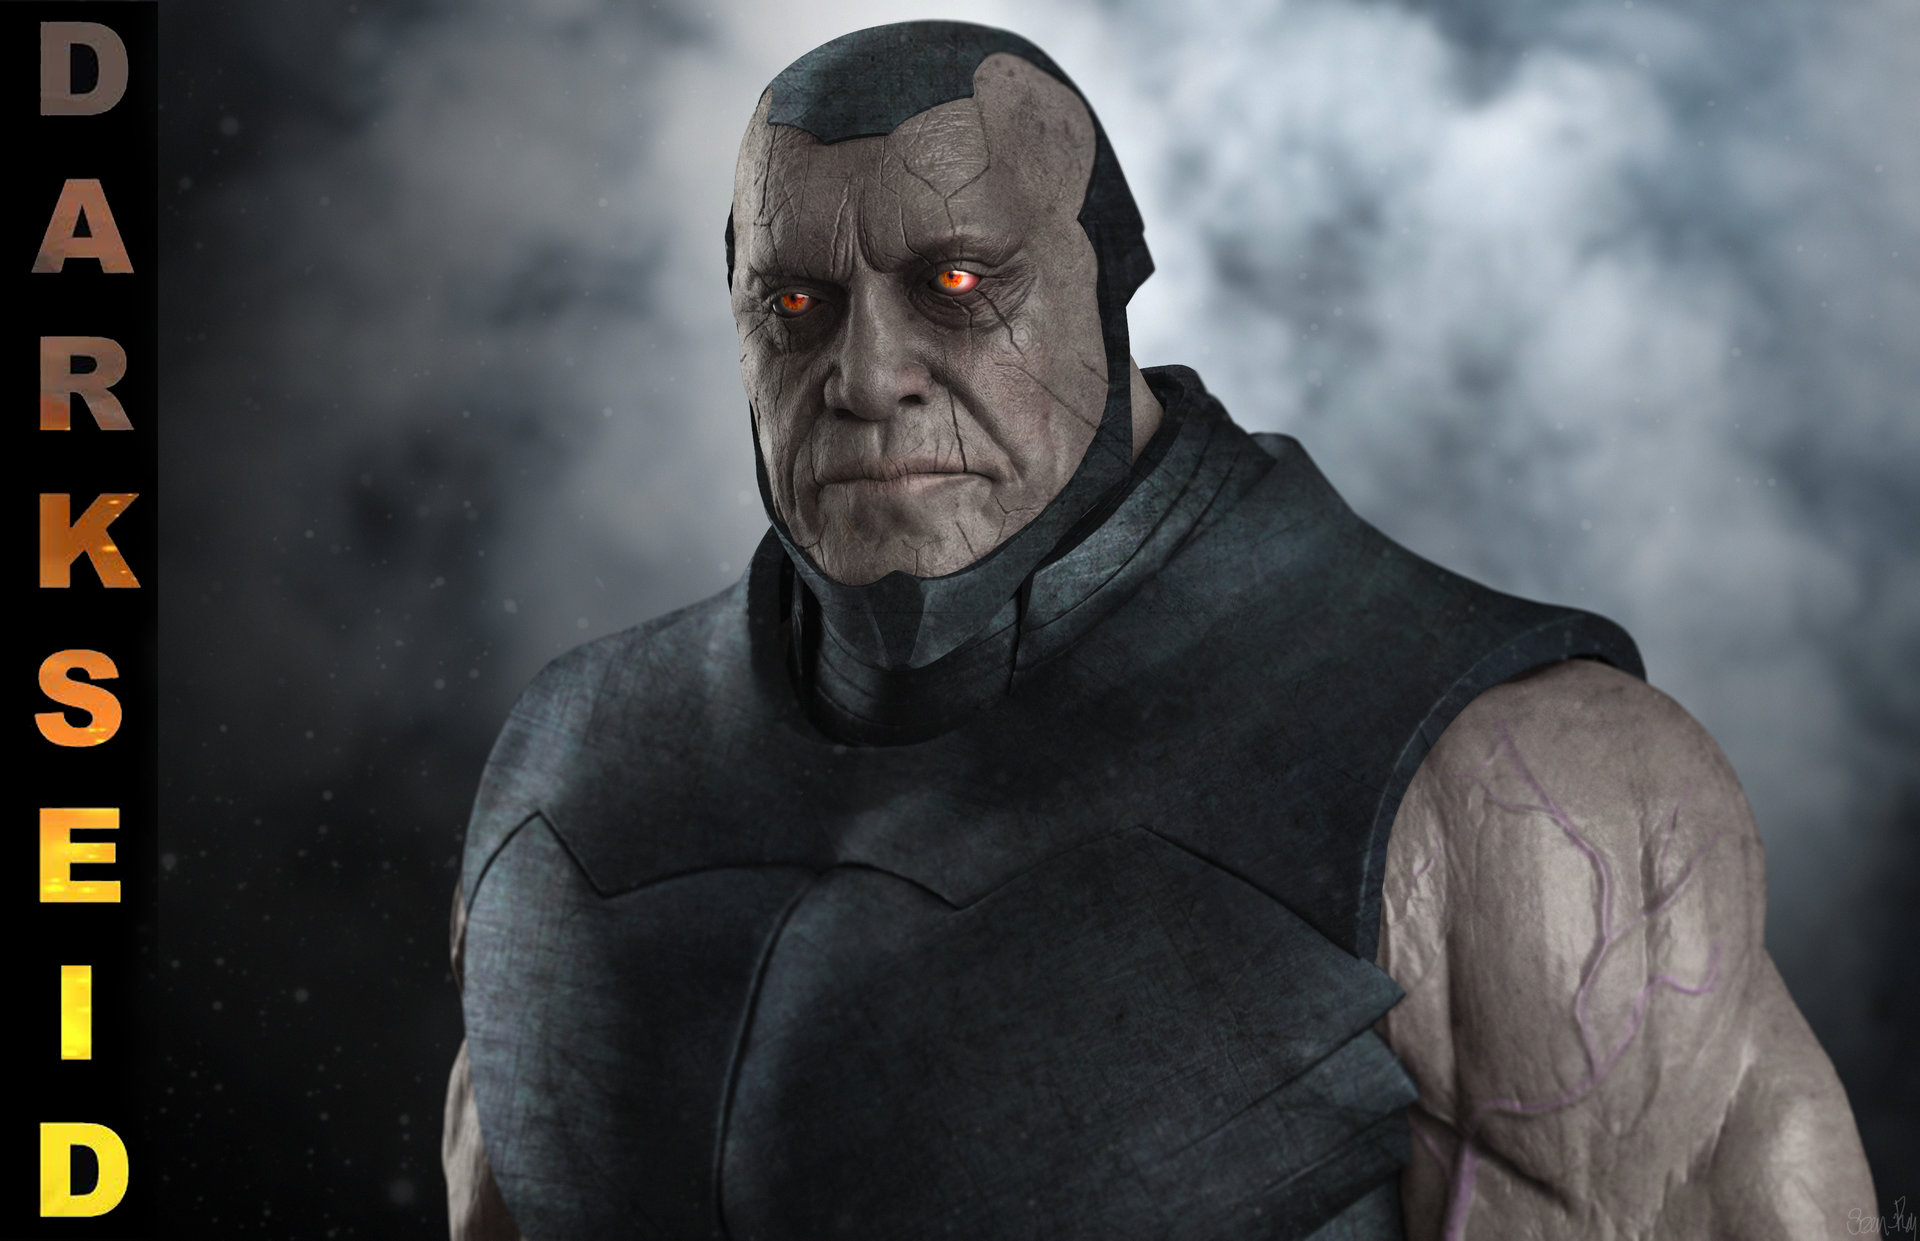 ¿Javier Bardem como Darkseid en ‘Batman v Superman’?